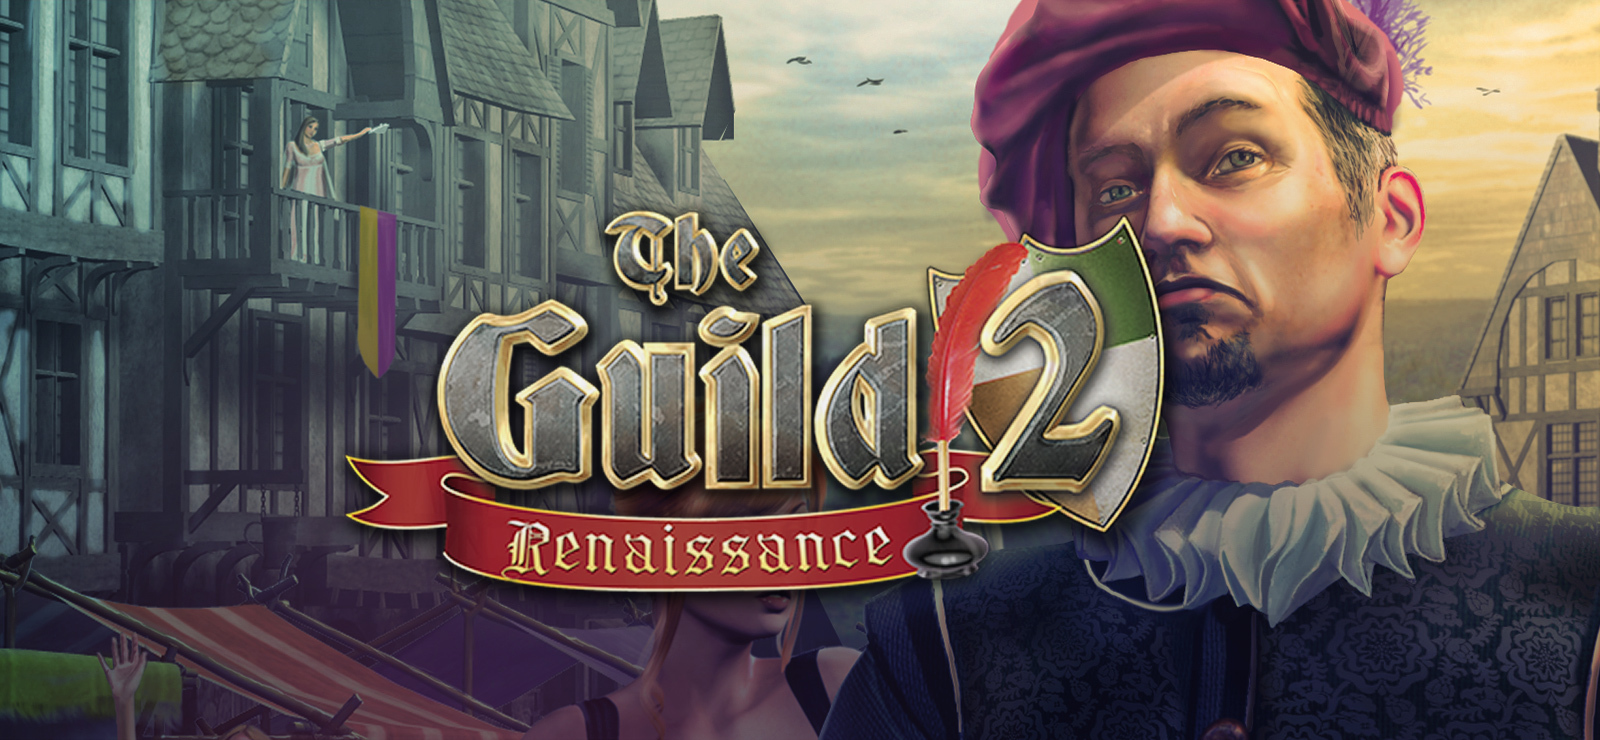 the guild 2 renaissance mod